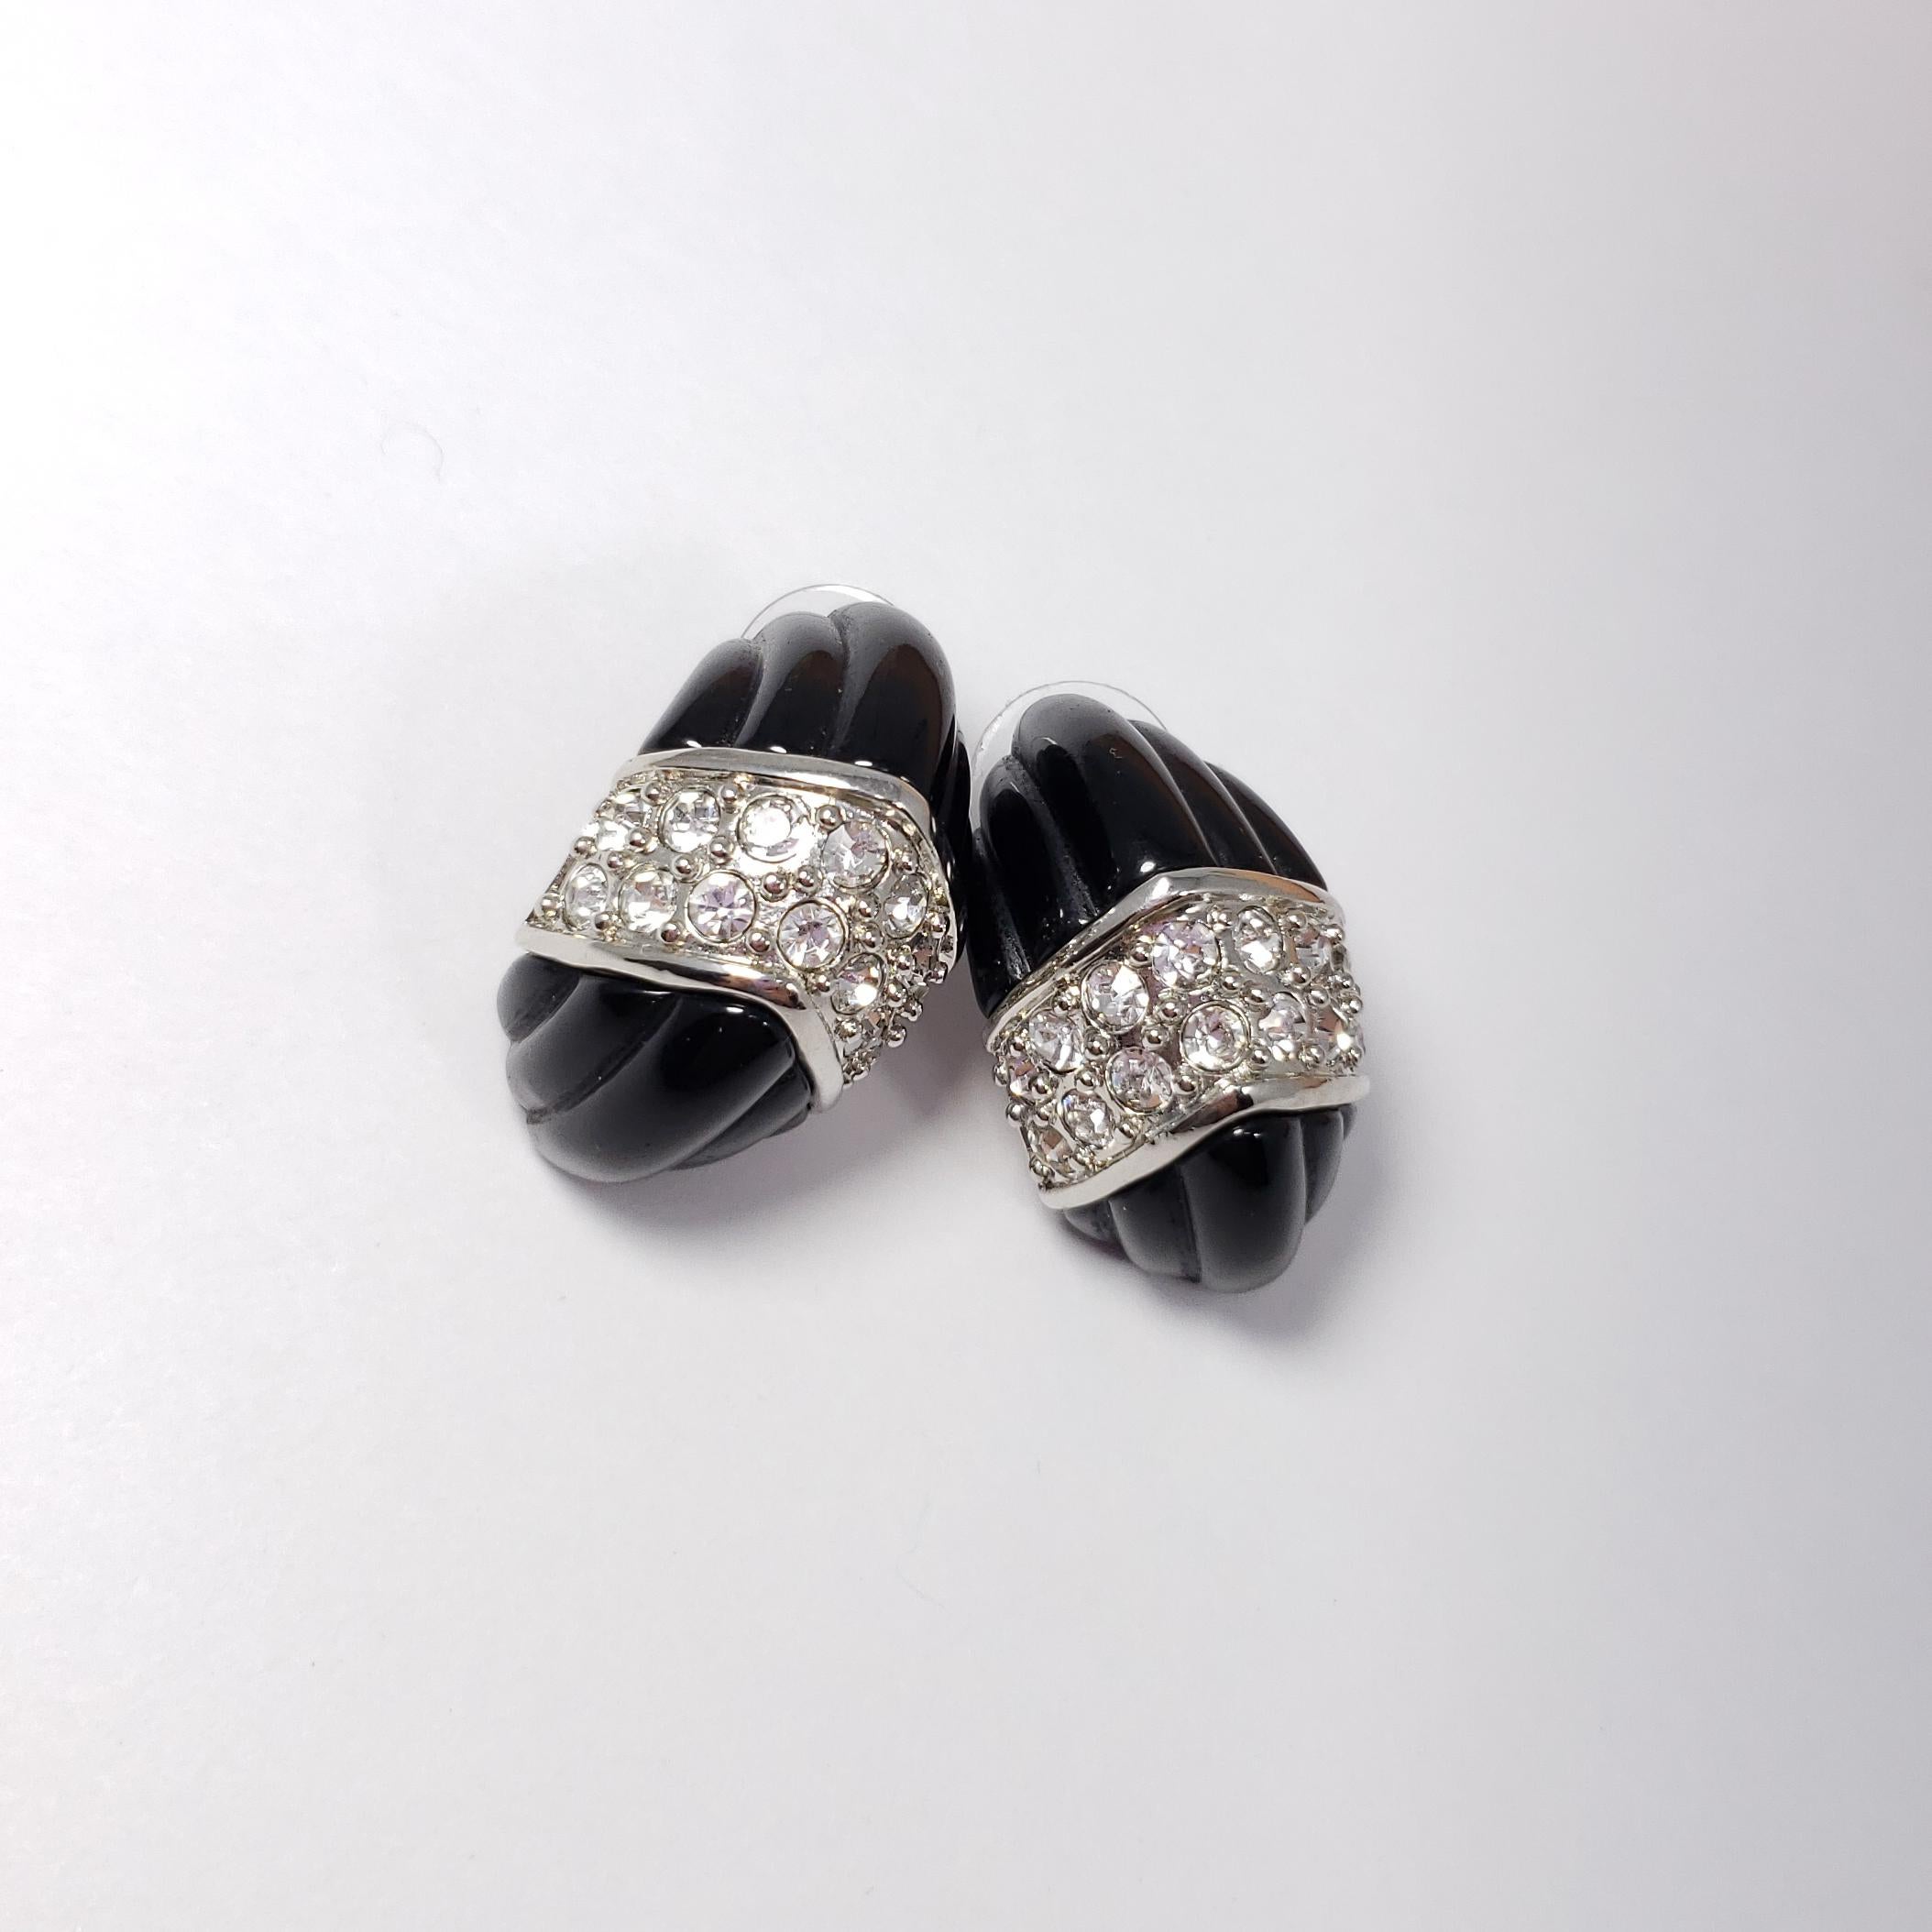 Ein Paar Ohrringe mit Ohrstecker von Kenneth Jay Lane. Jeder geschnitzte schwarze Ohrring ist mit klaren Pave-Kristallen in einer silberfarbenen Fassung verziert.

Punzierungen: KJL, China